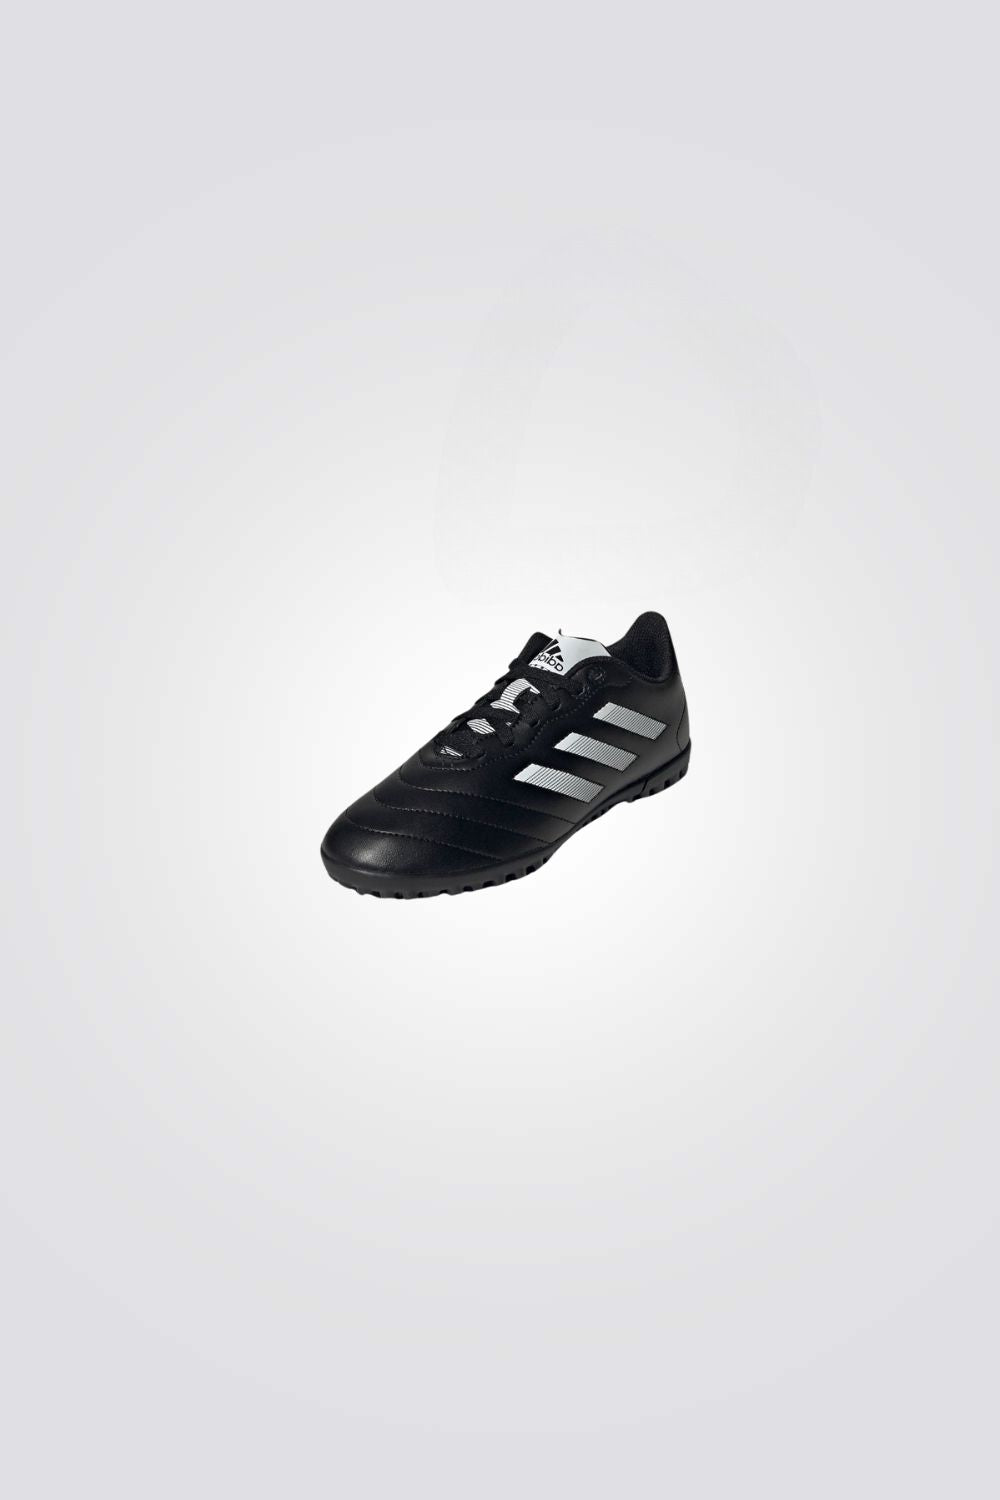 נעלי קטרגל לילדים GOLETTO VIII TURF בצבע שחור וכסוף